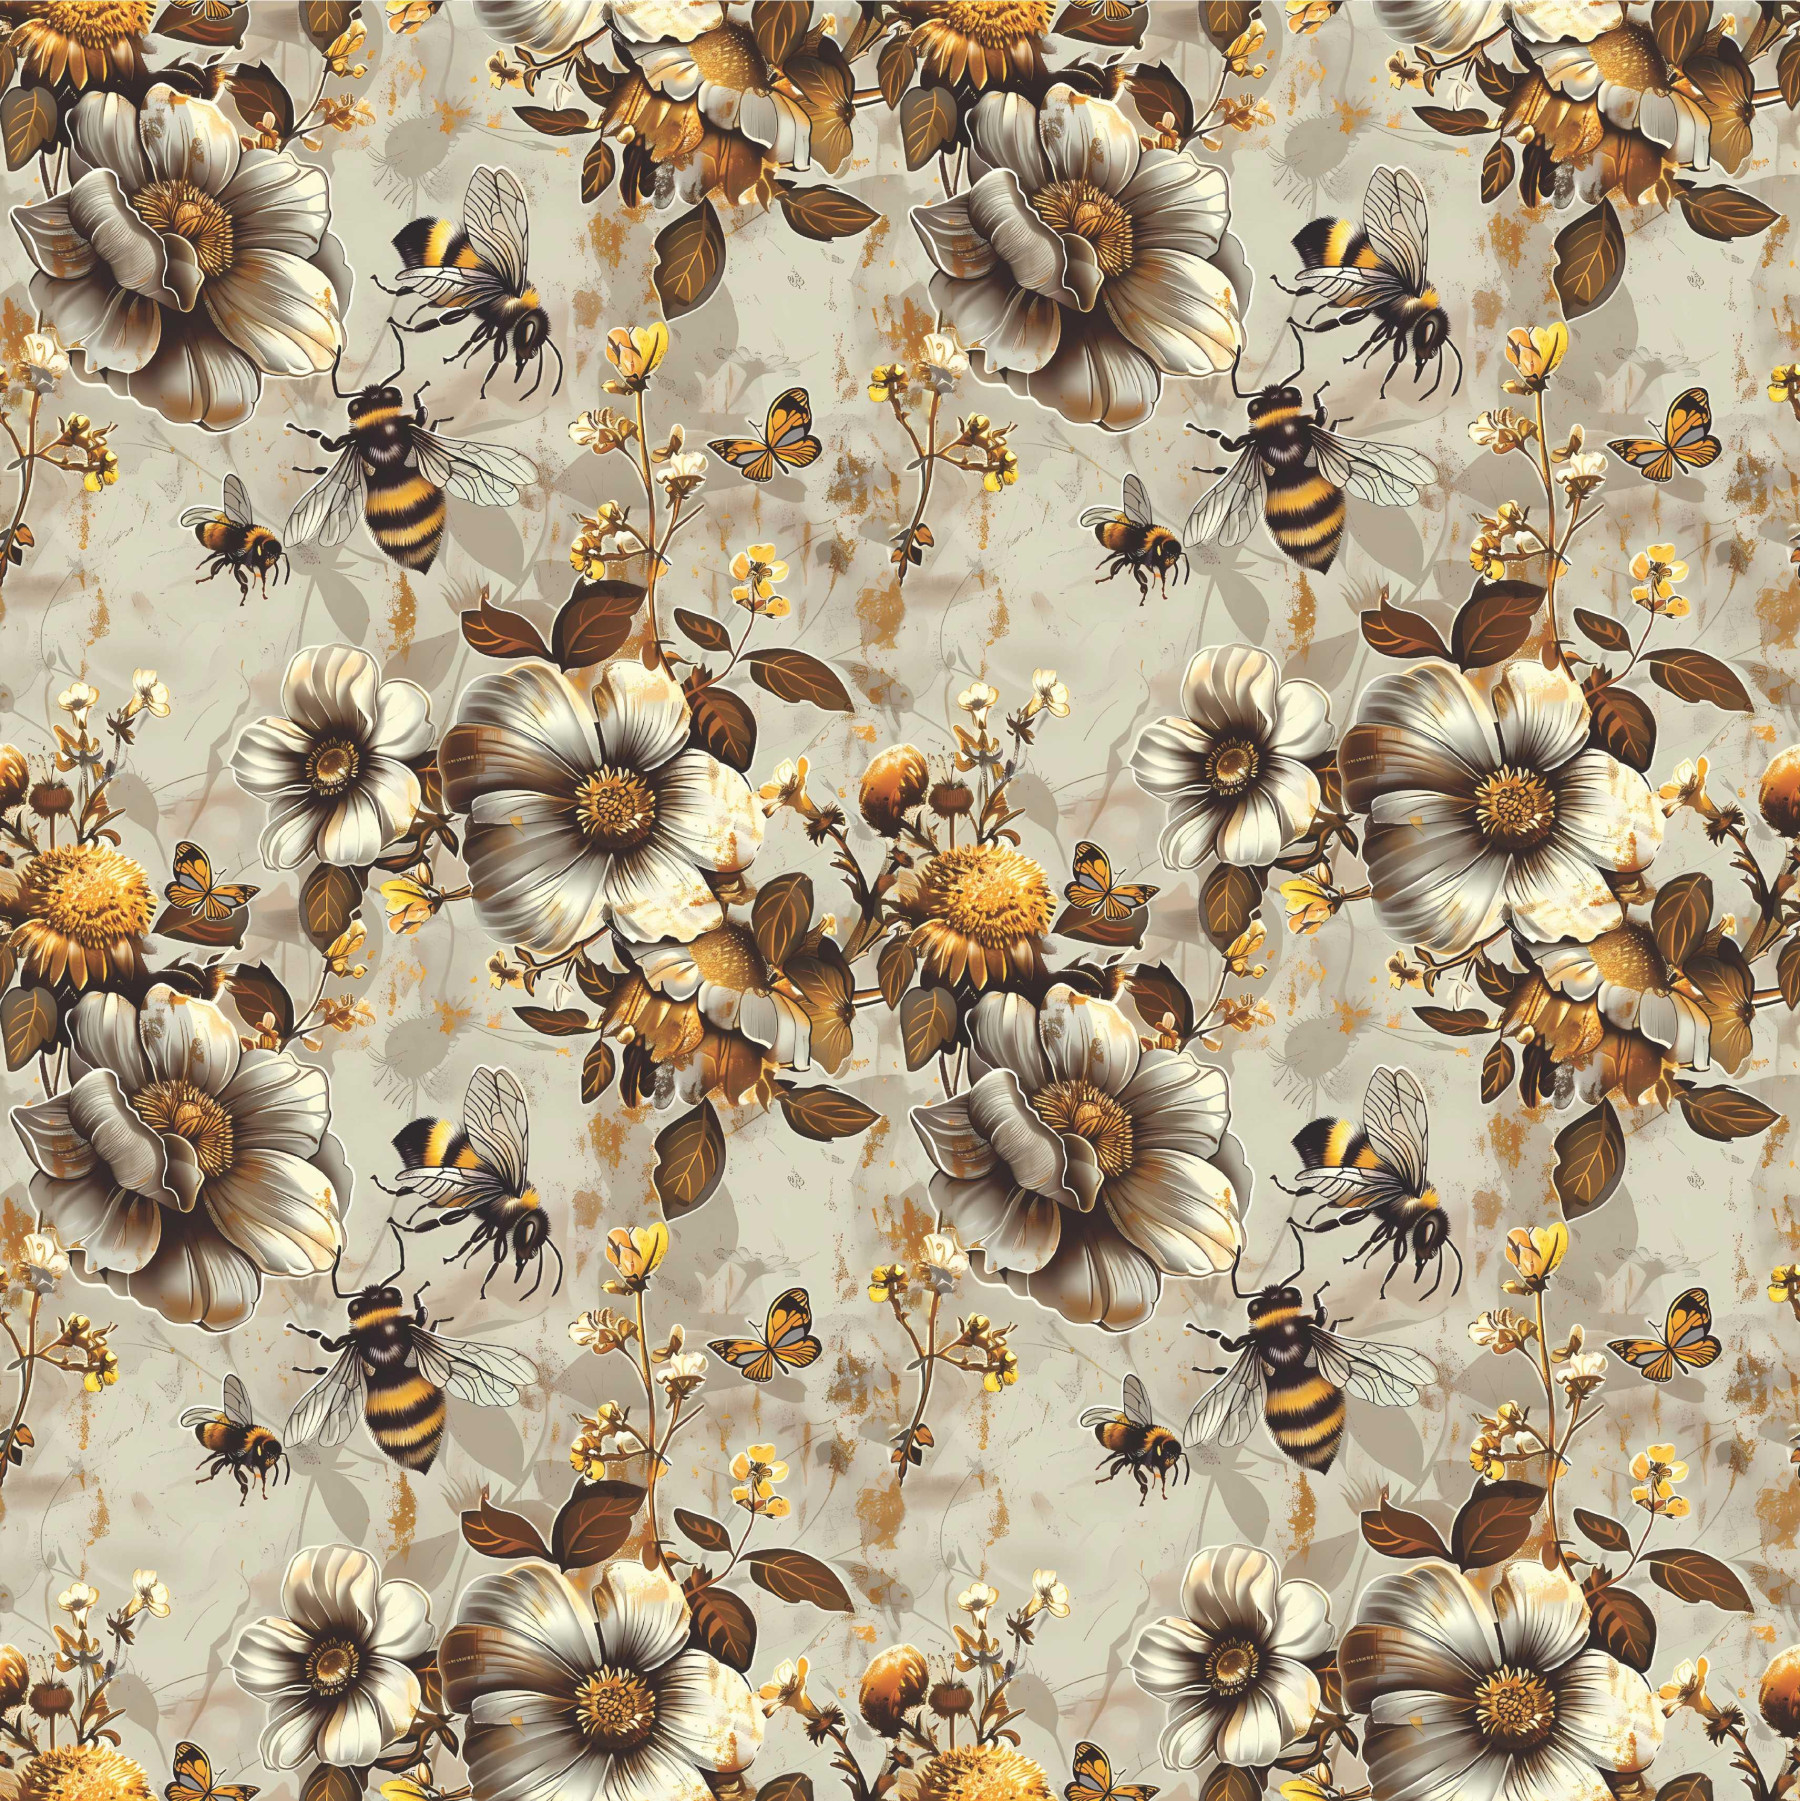 BEES & FLOWERS - Leinen 100%